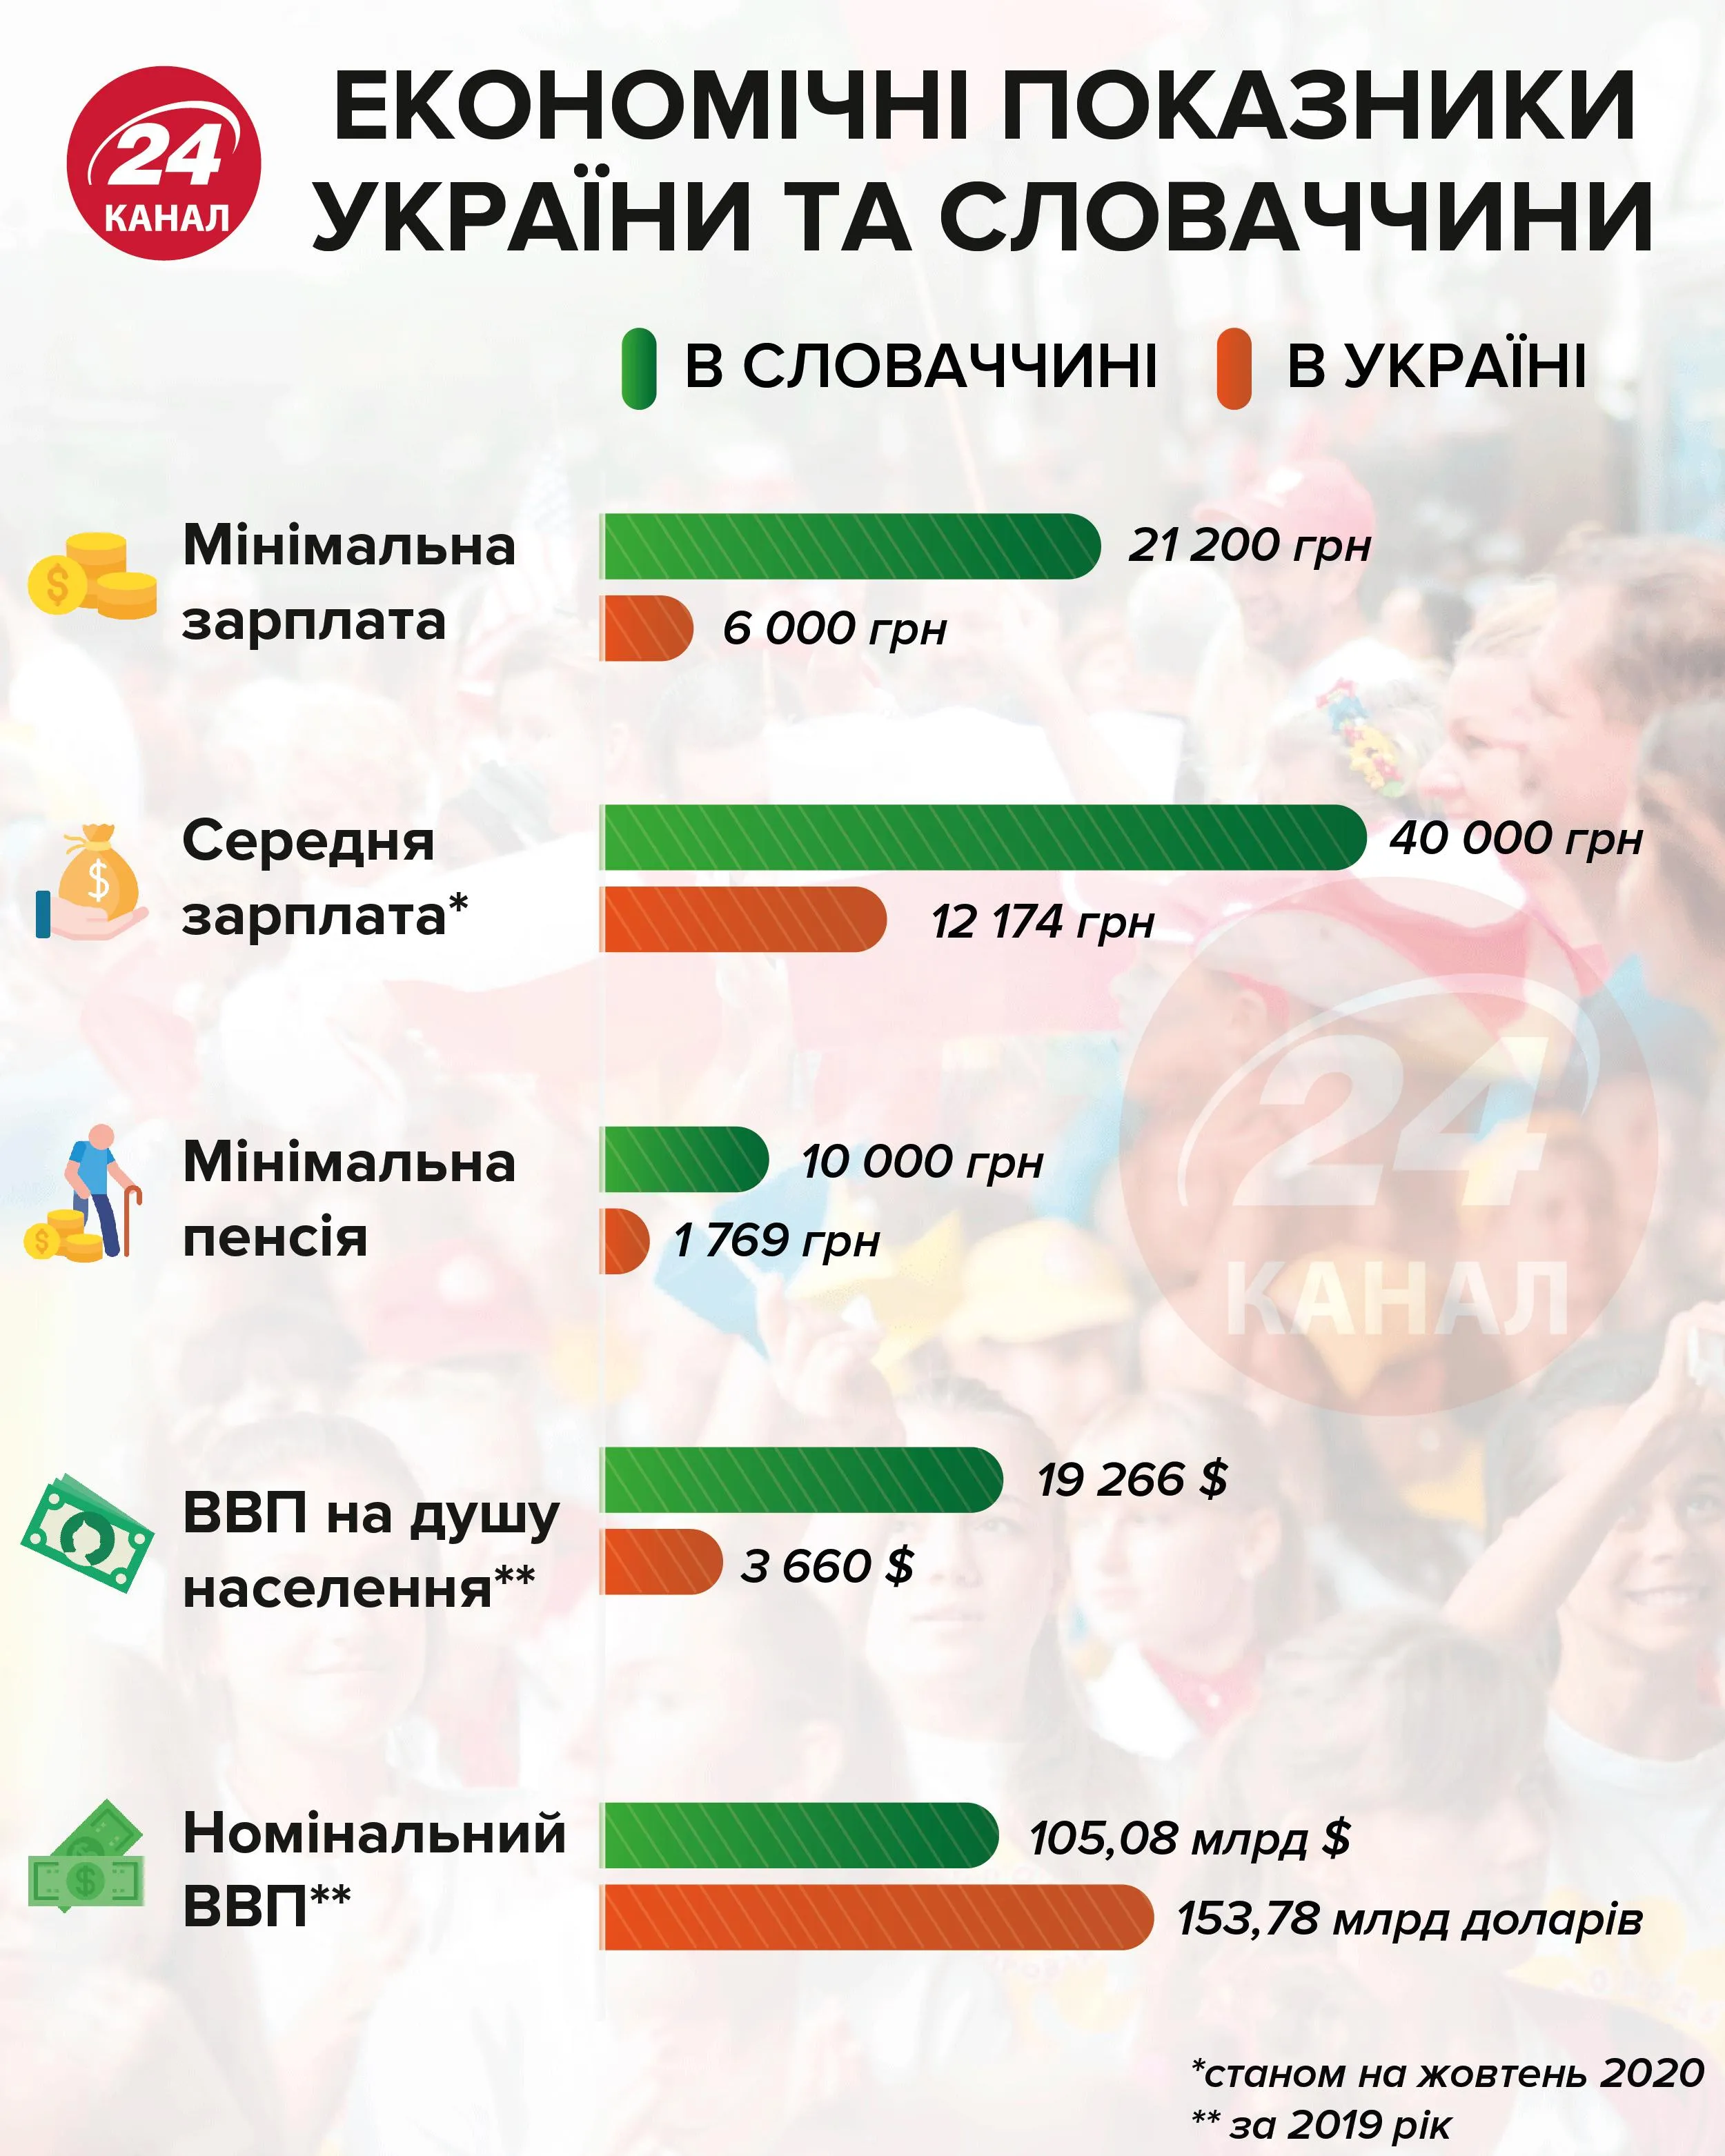 Економічні показники України та Словаччини  Інфографіка 24 каналу